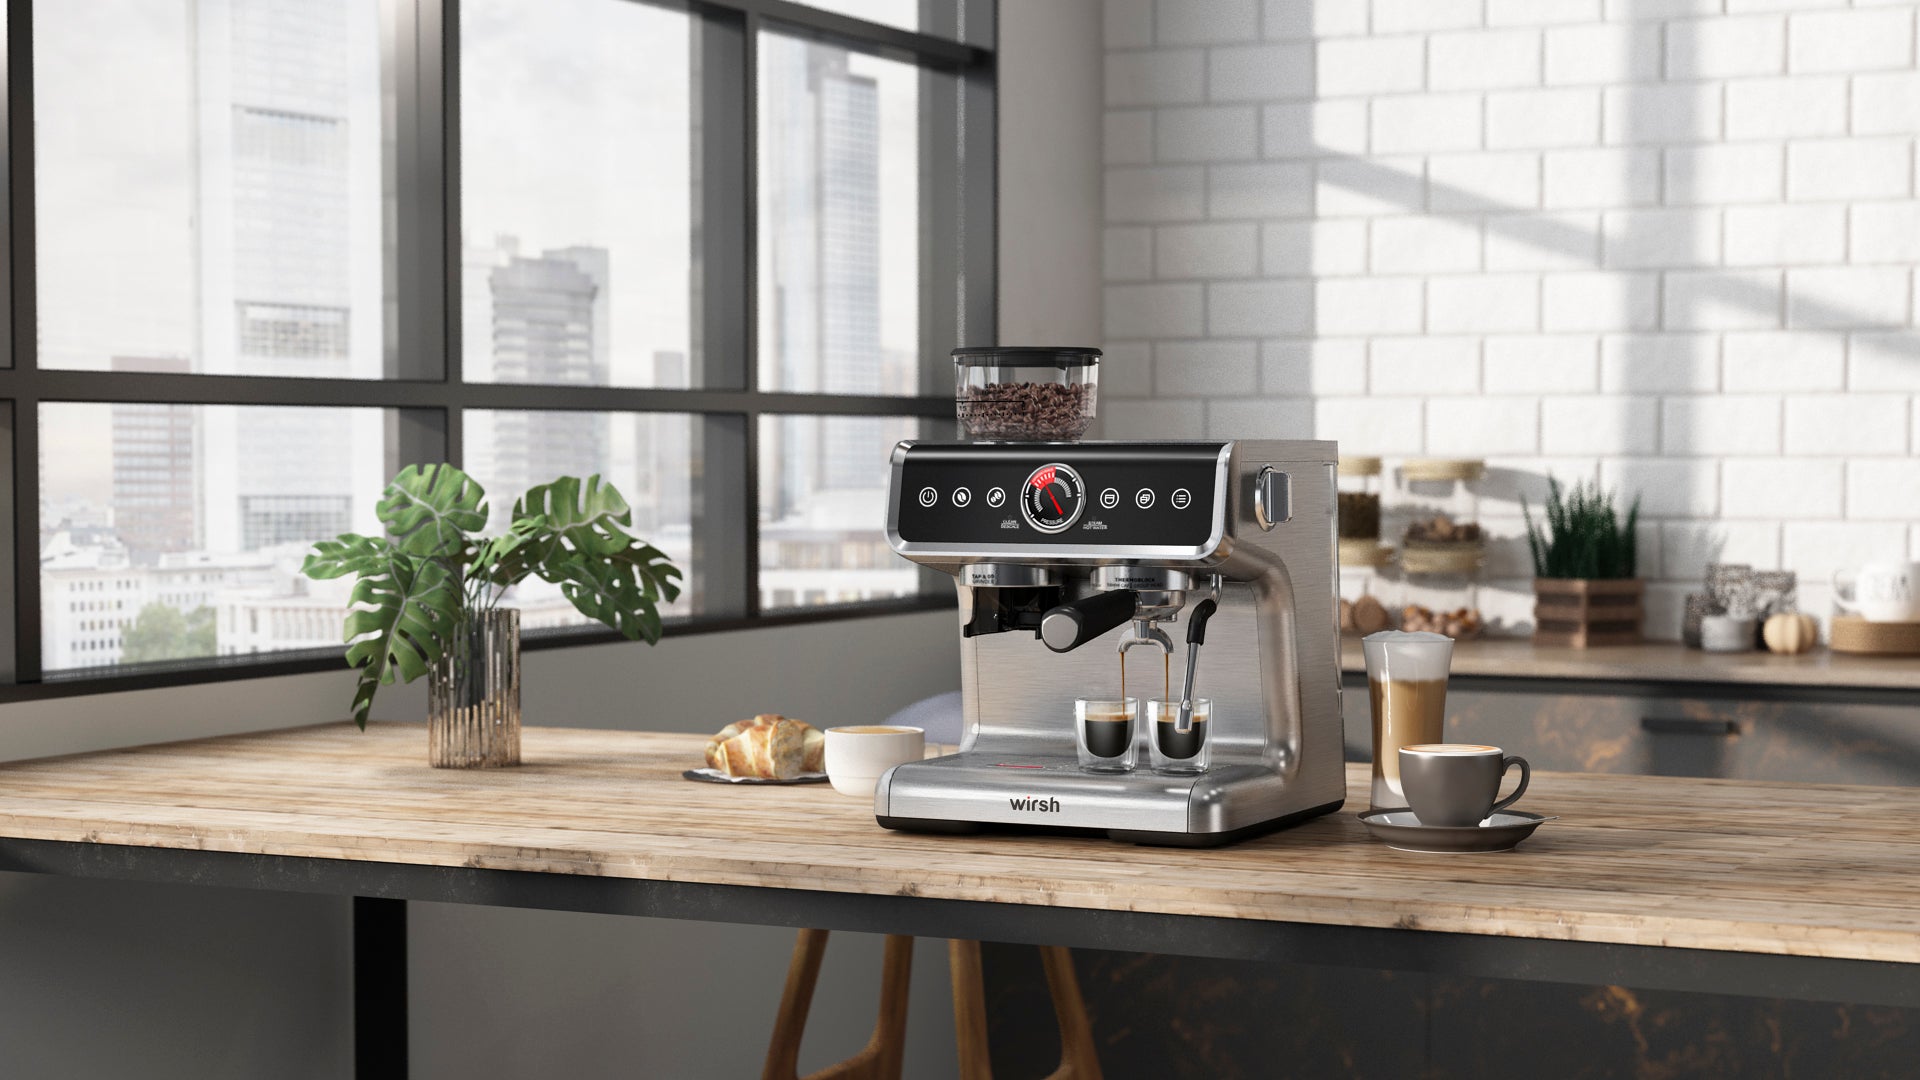 <img src="espresso machine.jpg" alt="wirsh espresso machine kitchen table"/>